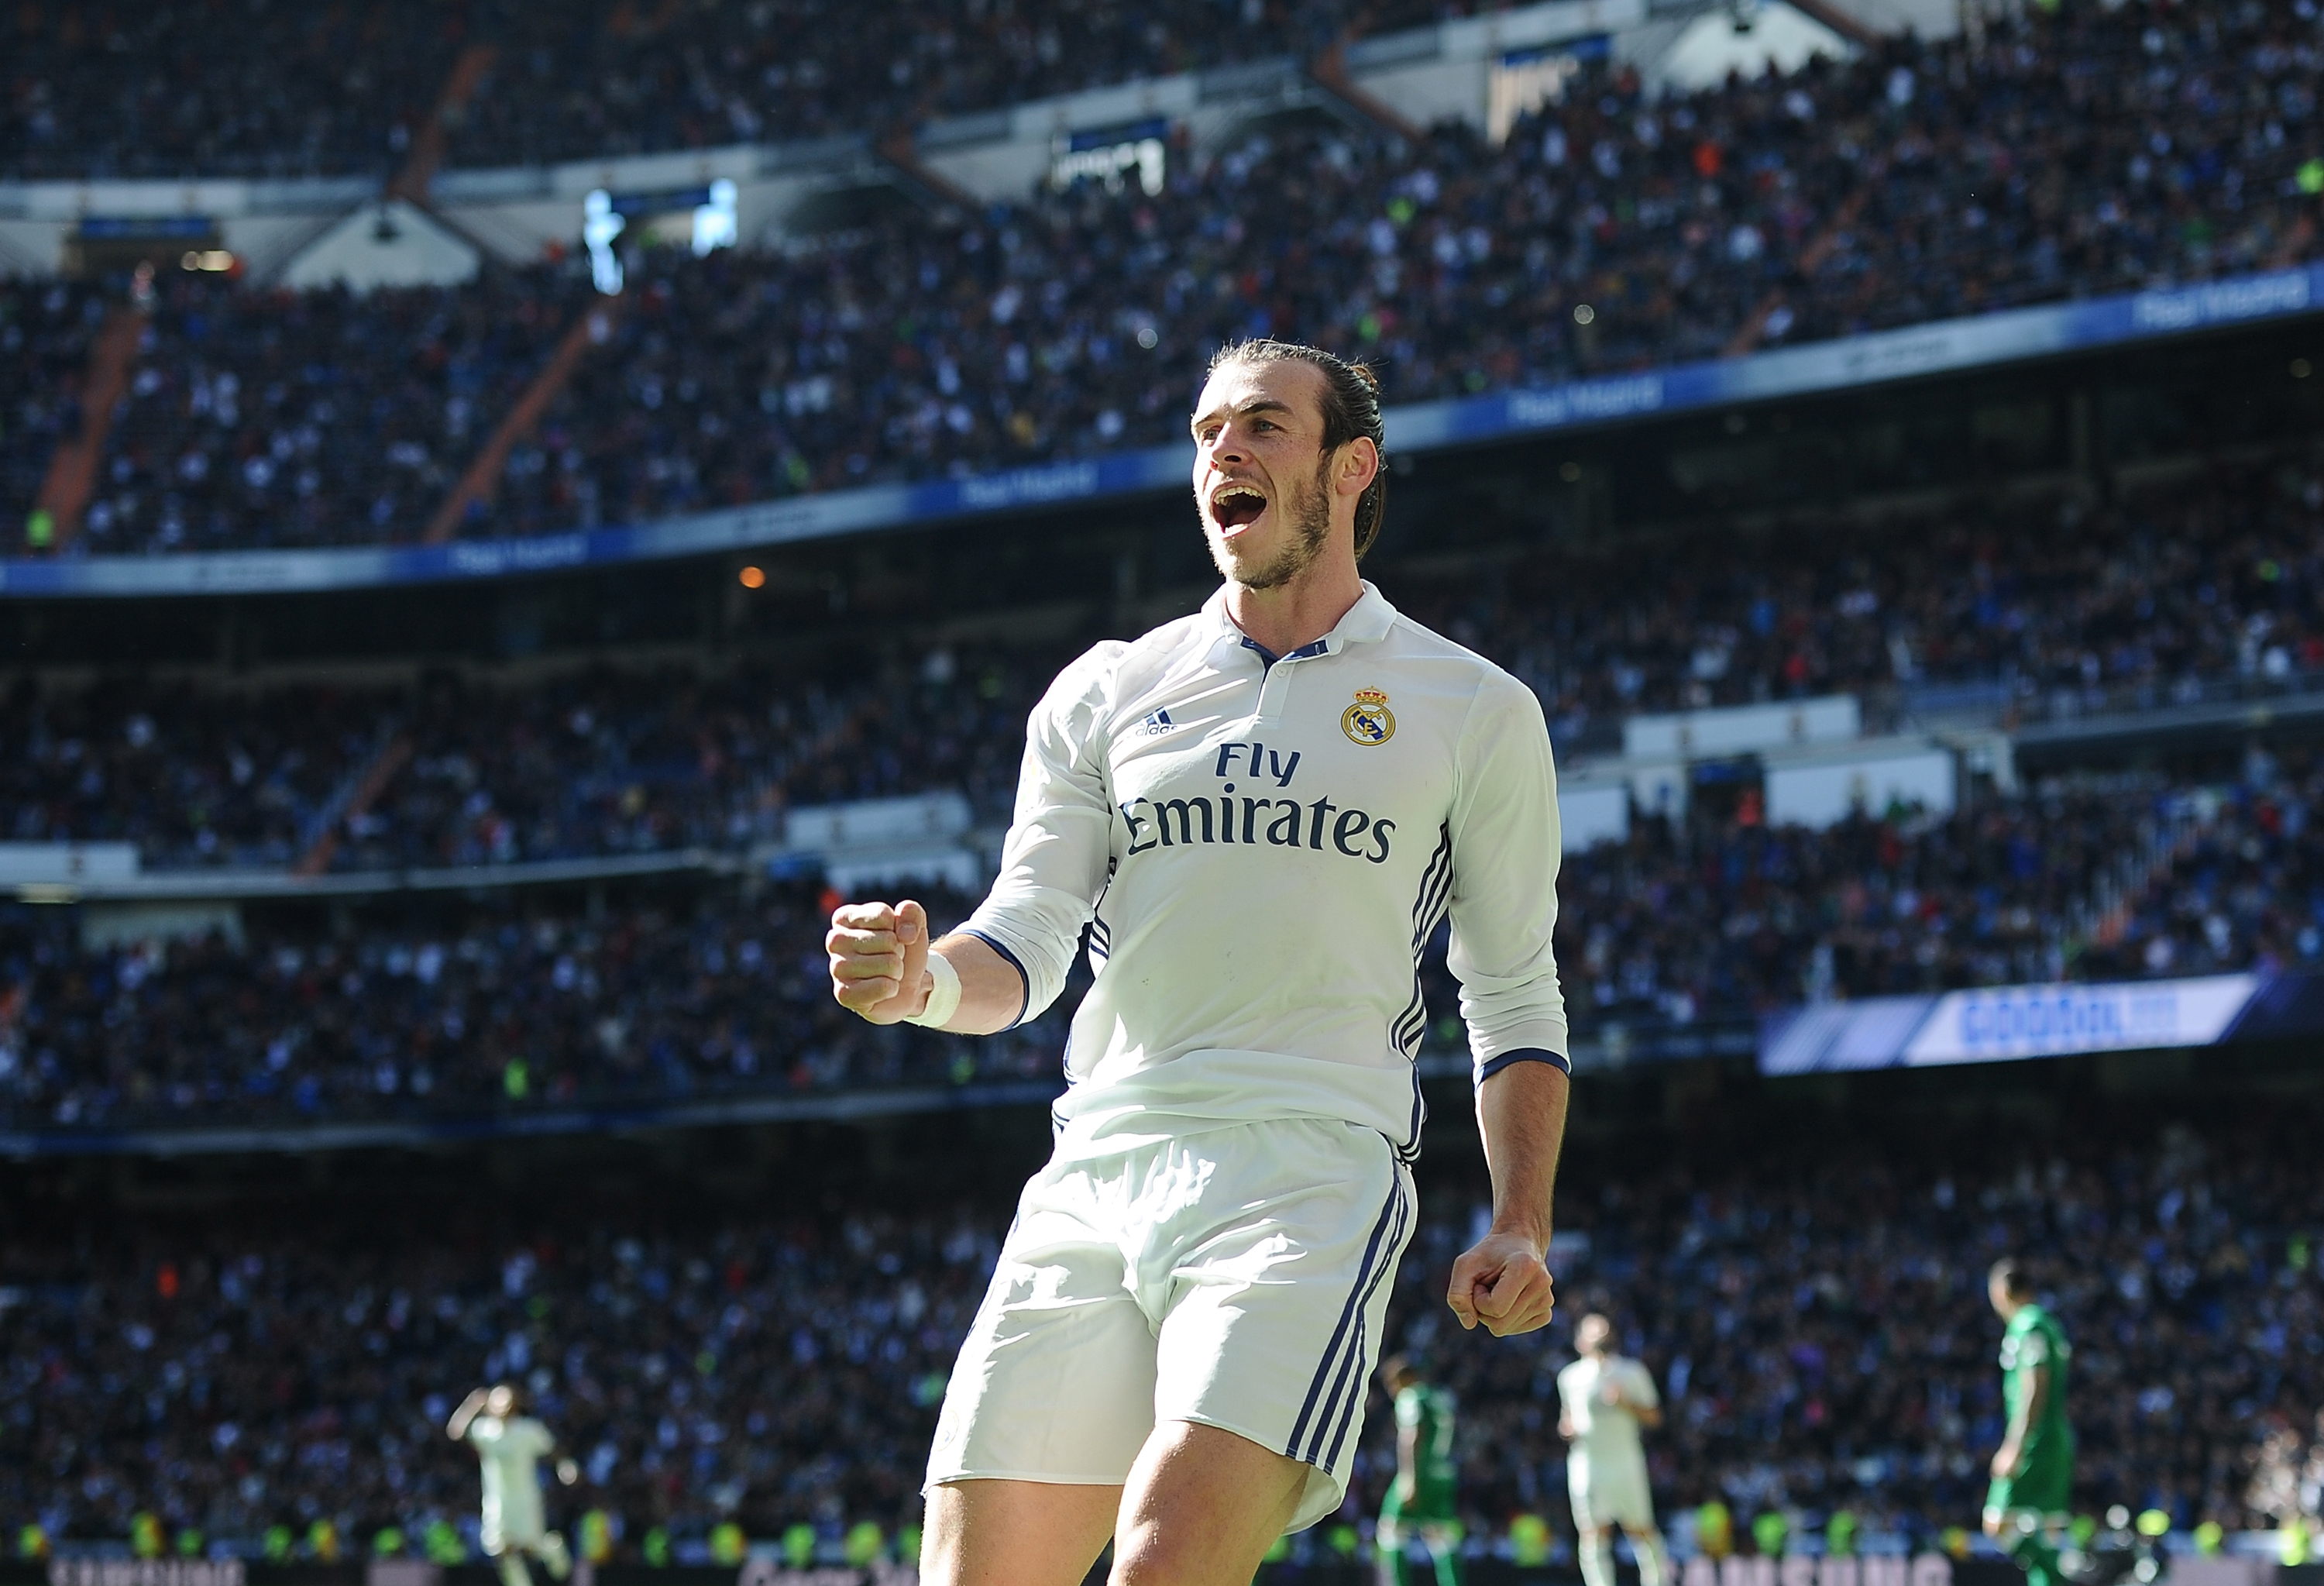 Gareth Bale celebrates after scoring for Real Madrid against Leganes in November 2016.